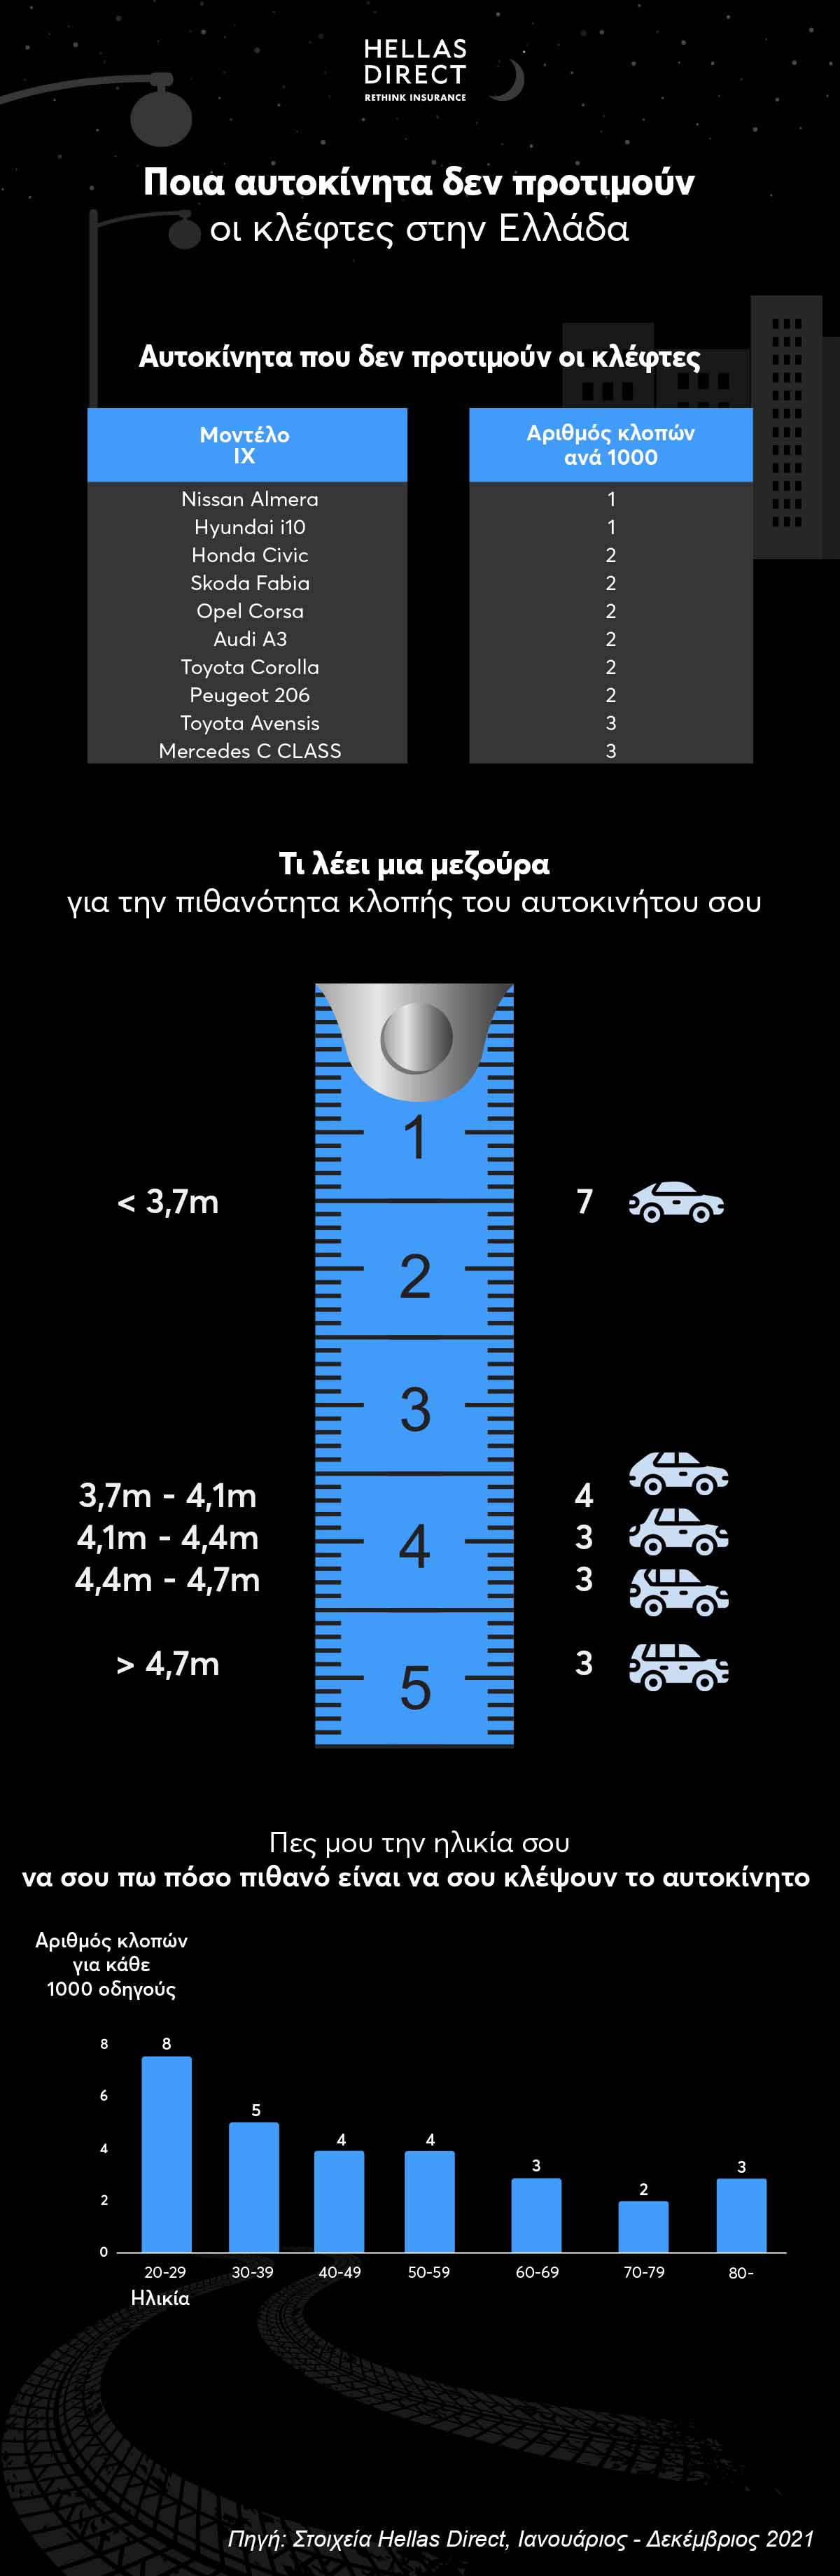 Ινφογκράφικ με τρία διαγράμματα: Ποια αυτοκίνητα δεν προτιμούν οι κλέφτες στην Ελλάδα, σχέση μήκους αυτοκινήτου και κλοπών, σχέση κλοπών με ηλικία οδηγού, 